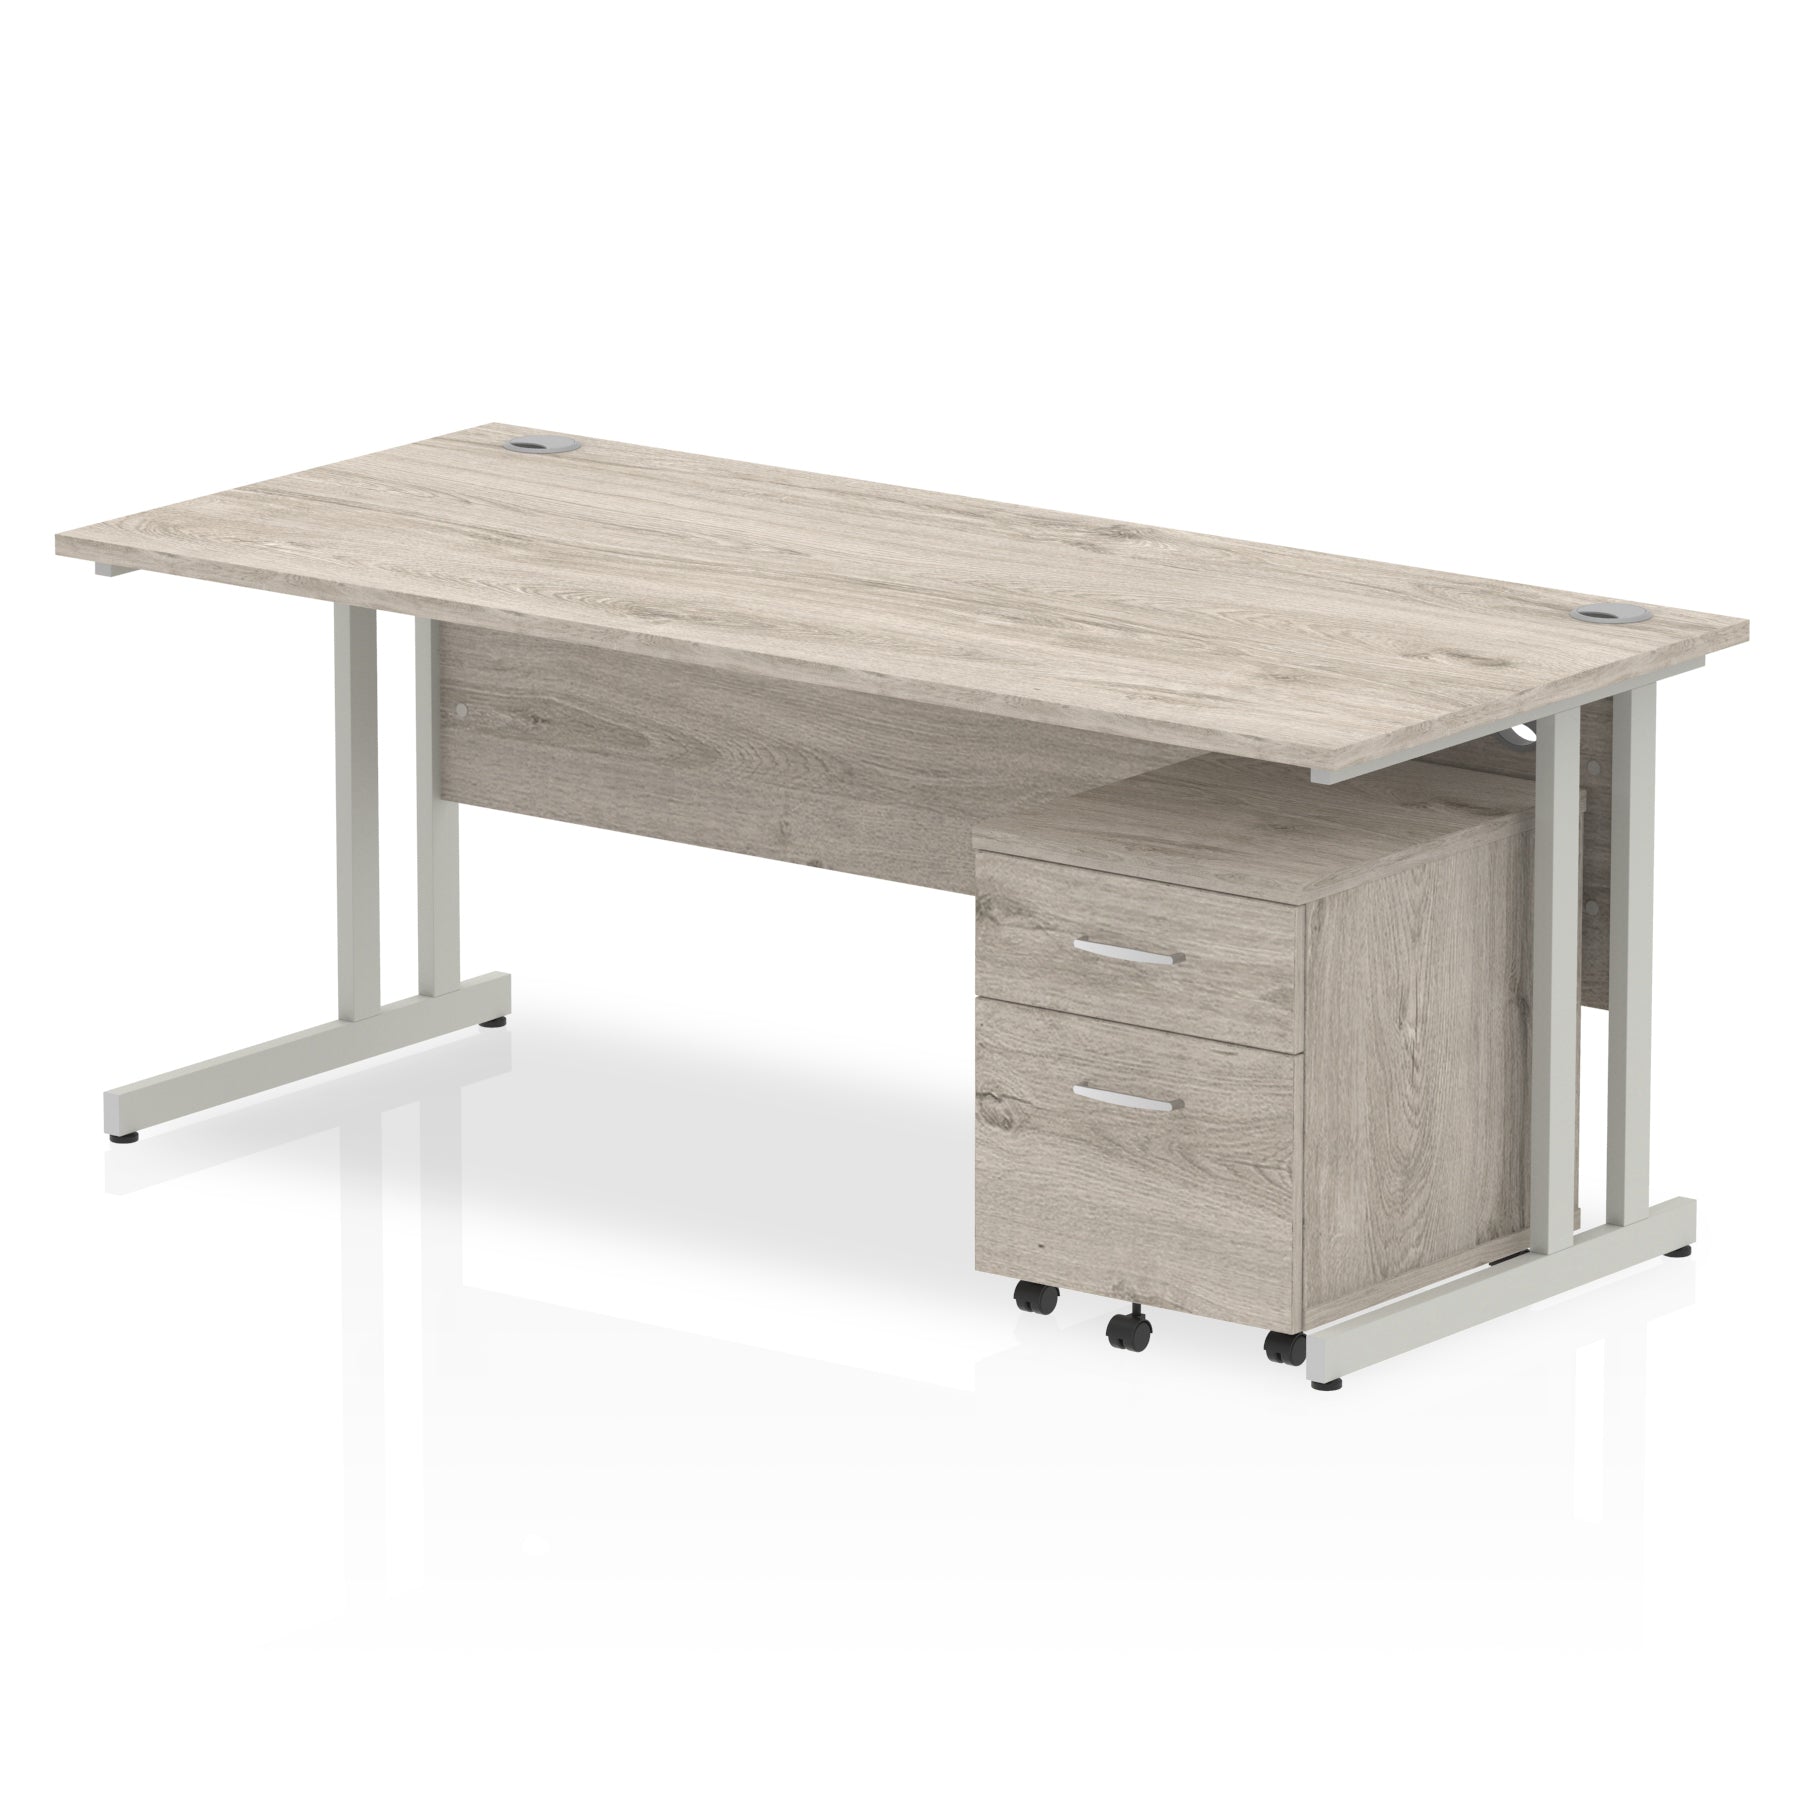 Impulse 1800mm Cantilever Straight Desk & Mobile Pedestal - MFC, Rectangular, 1800x800, Silver/White Frame, 2/3 Lockable Drawers